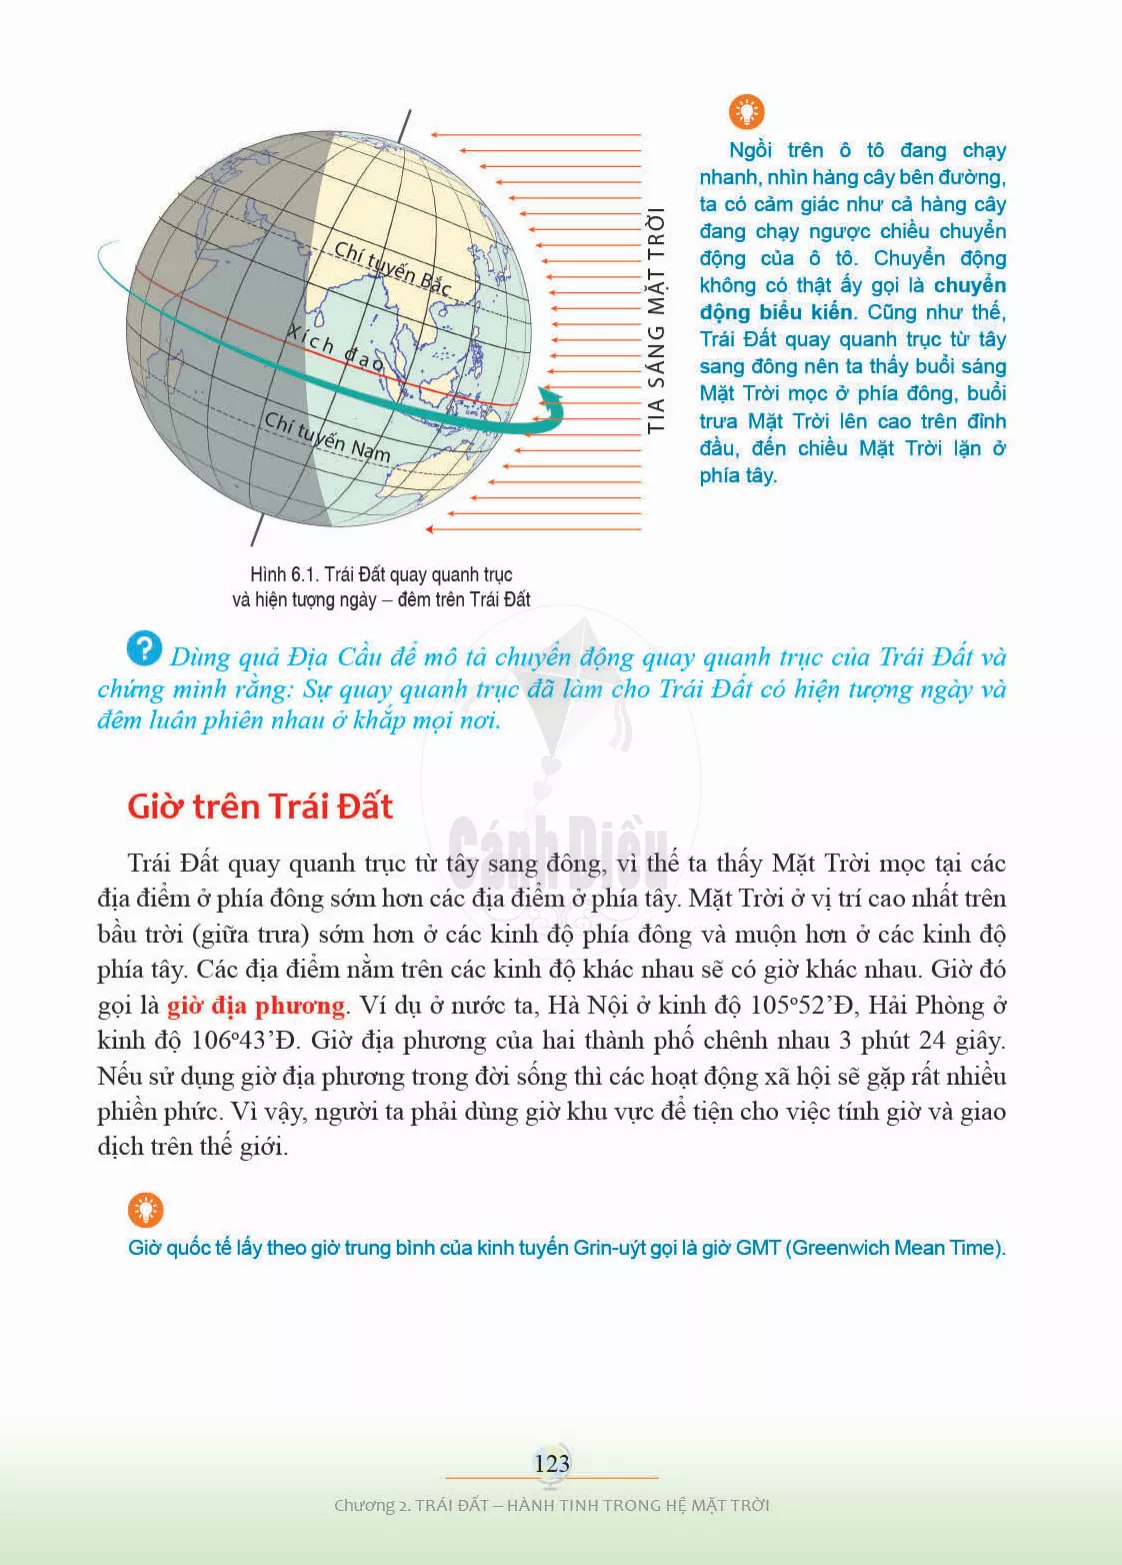 Bài 6. Chuyển động tự quay quanh trục của Trái Đất và các hệ quả địa lí